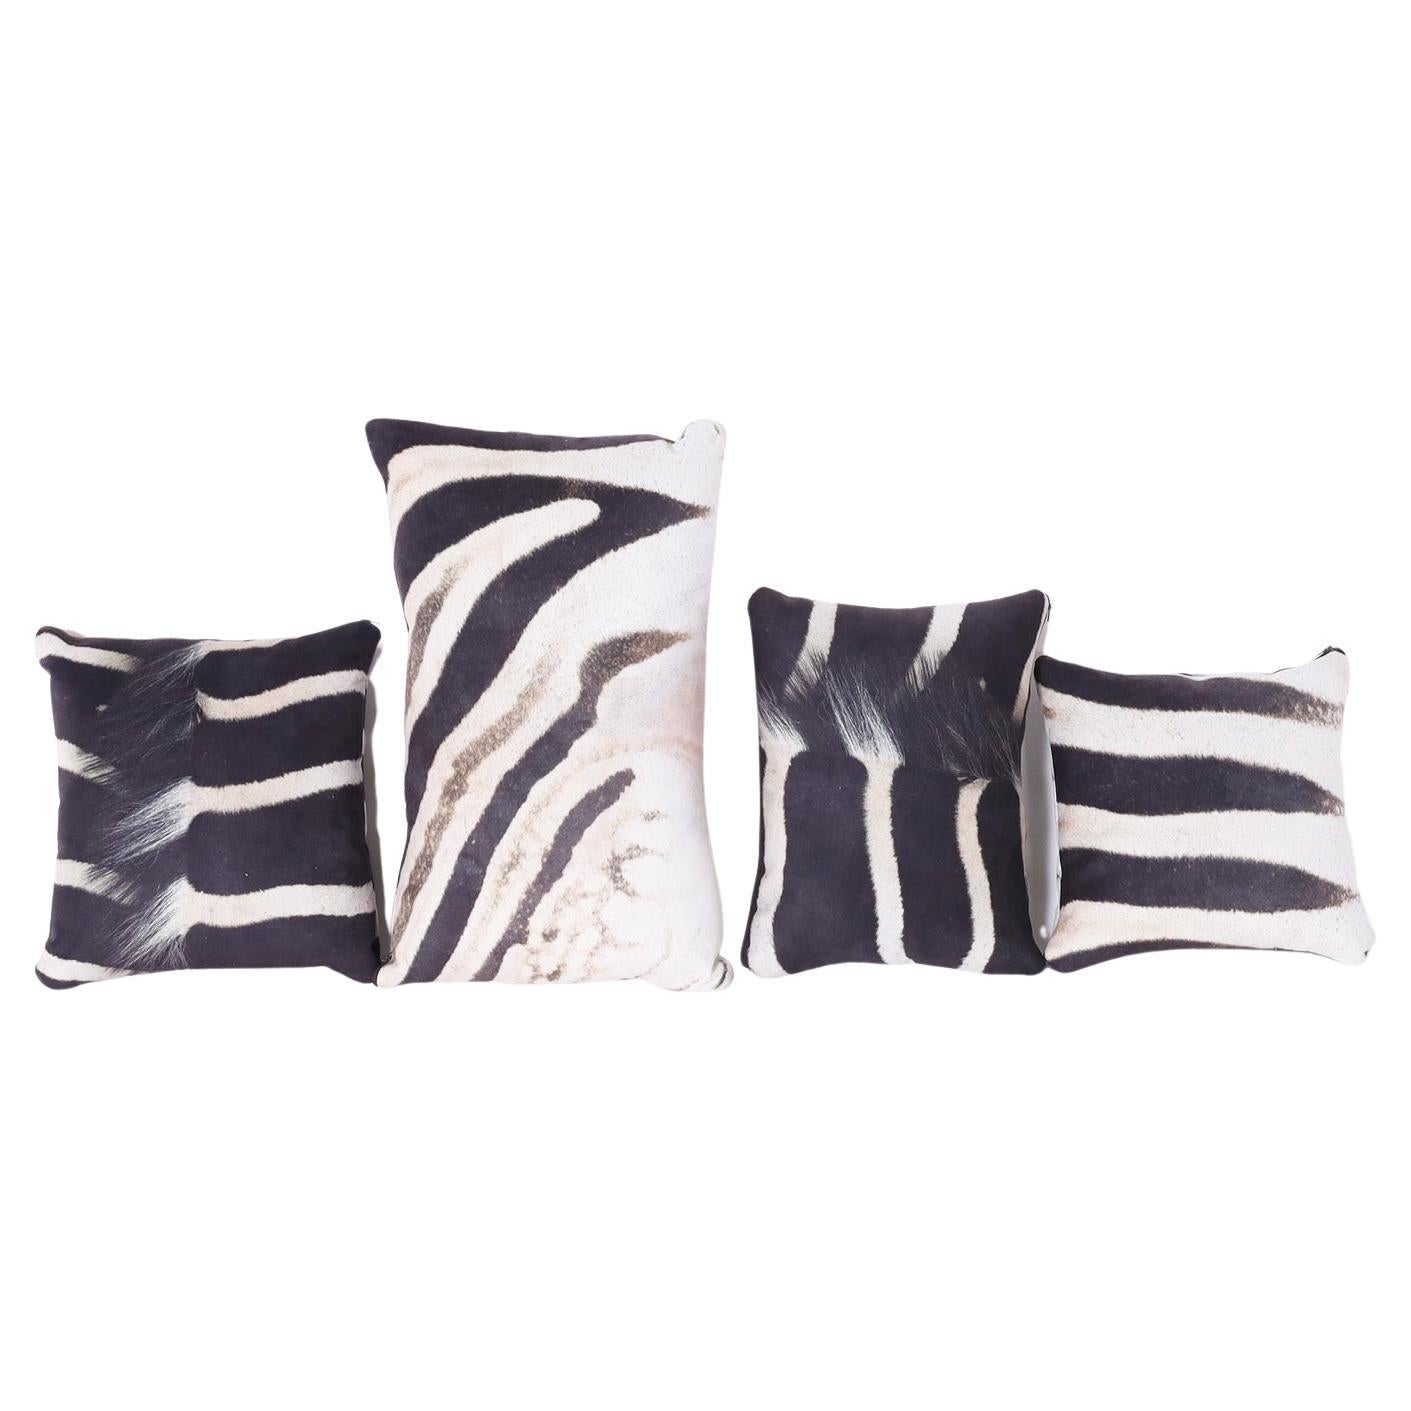 *Zwei Kissen im British Colonial Stil mit Zebradruck, Einzelpreise im Angebot